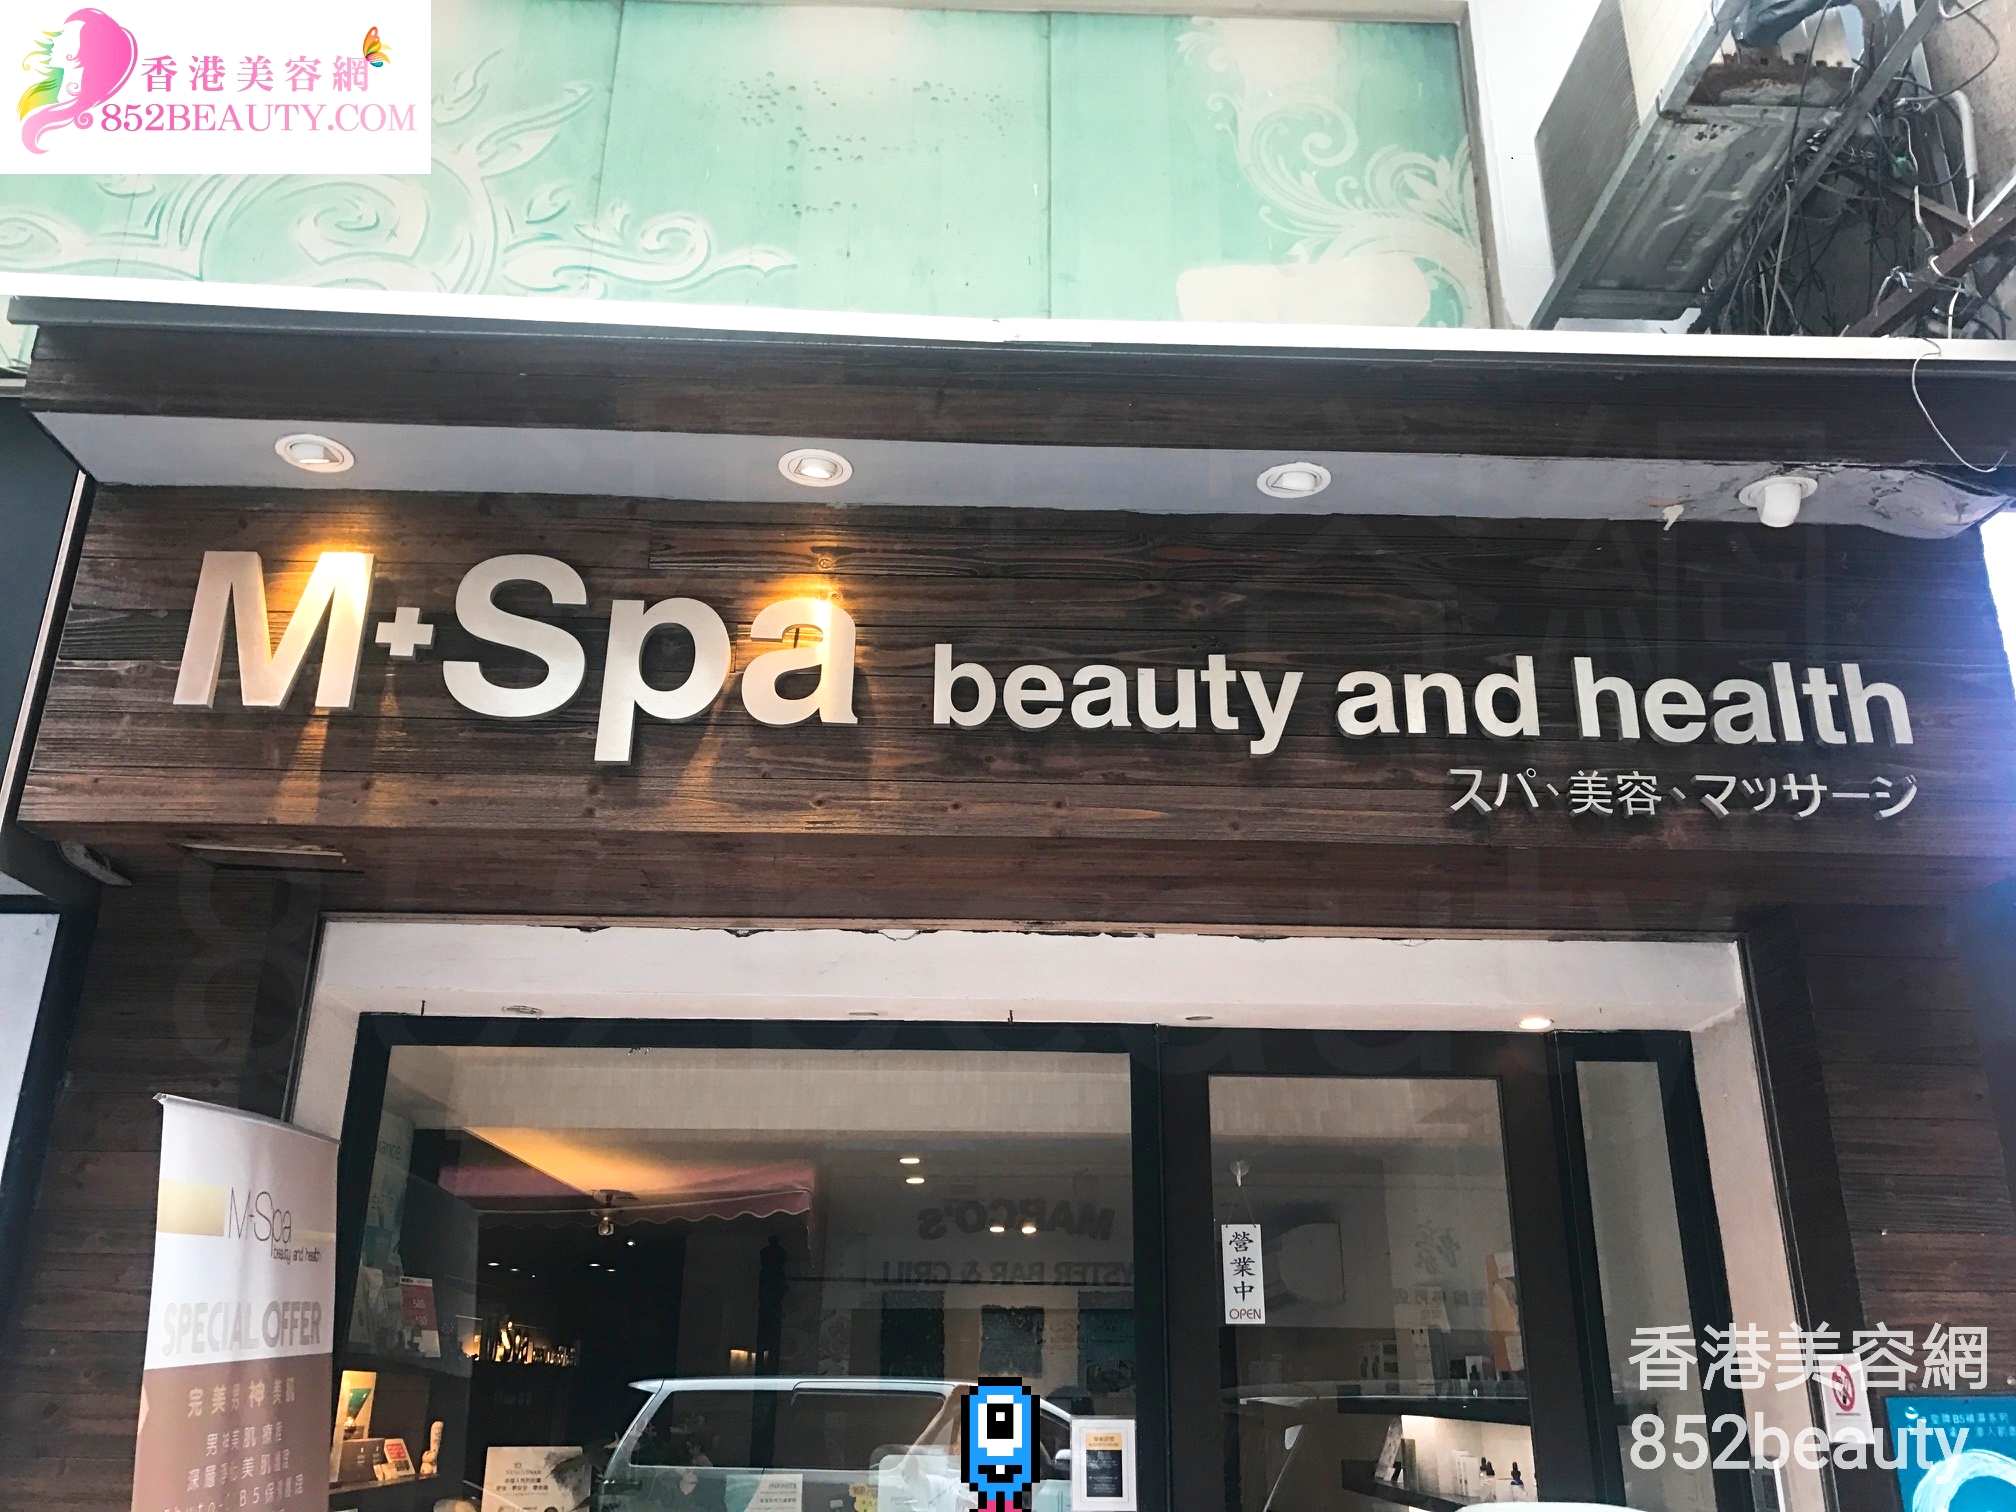 面部護理: M+Spa beauty and health